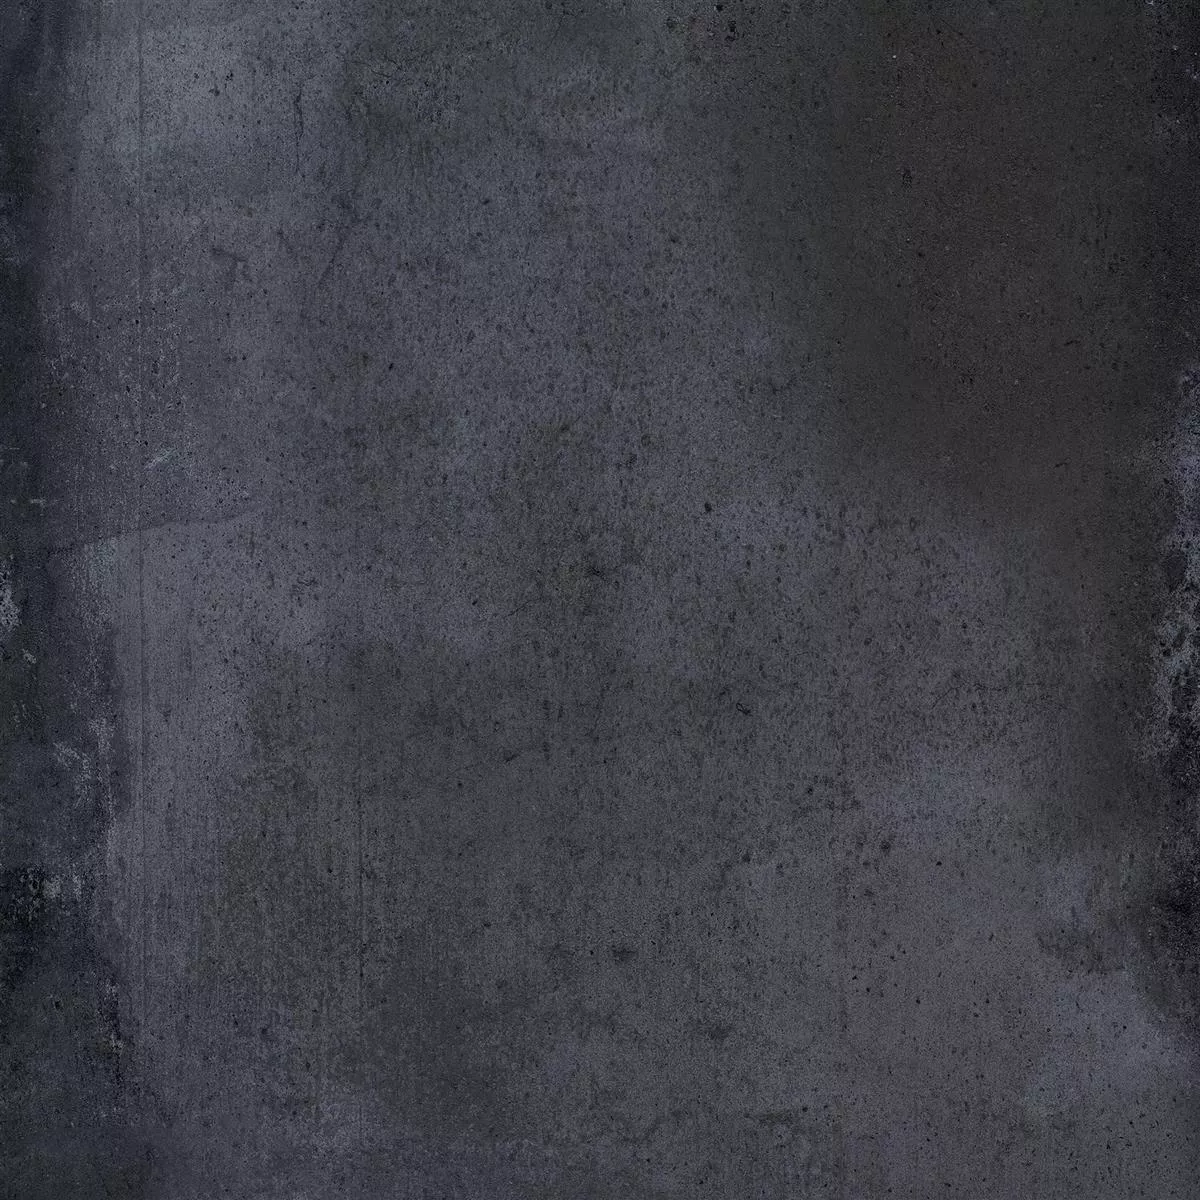 Πρότυπο Πλακάκι Δαπέδου Εμφάνιση Tσιμέντου Maryland Ανθρακίτης 60x60cm